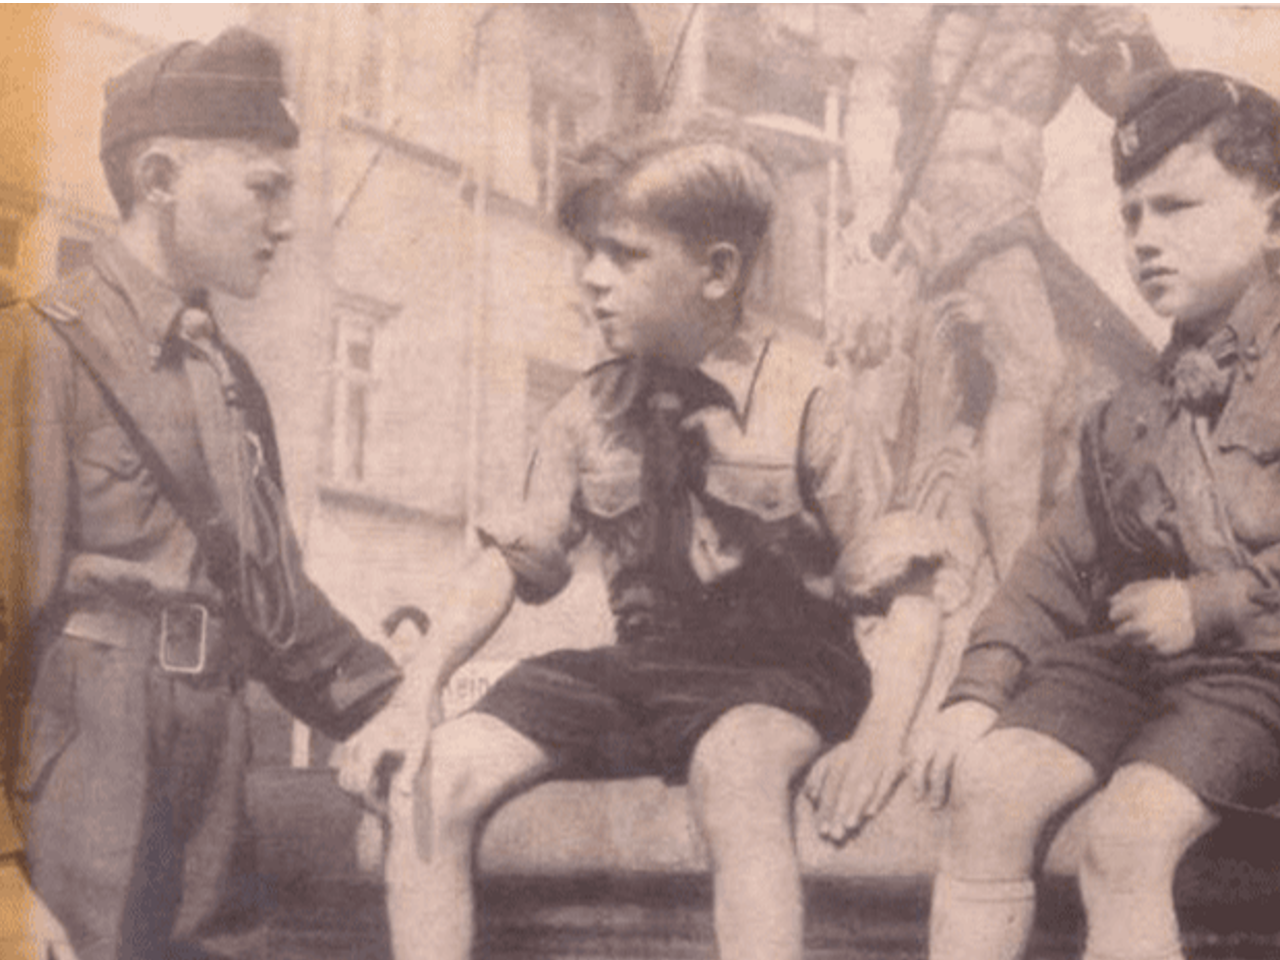 Photo noir et blanc de deux enfants membres des Ustaše Youth entourant un garçon des Jeunesses hitlériennes